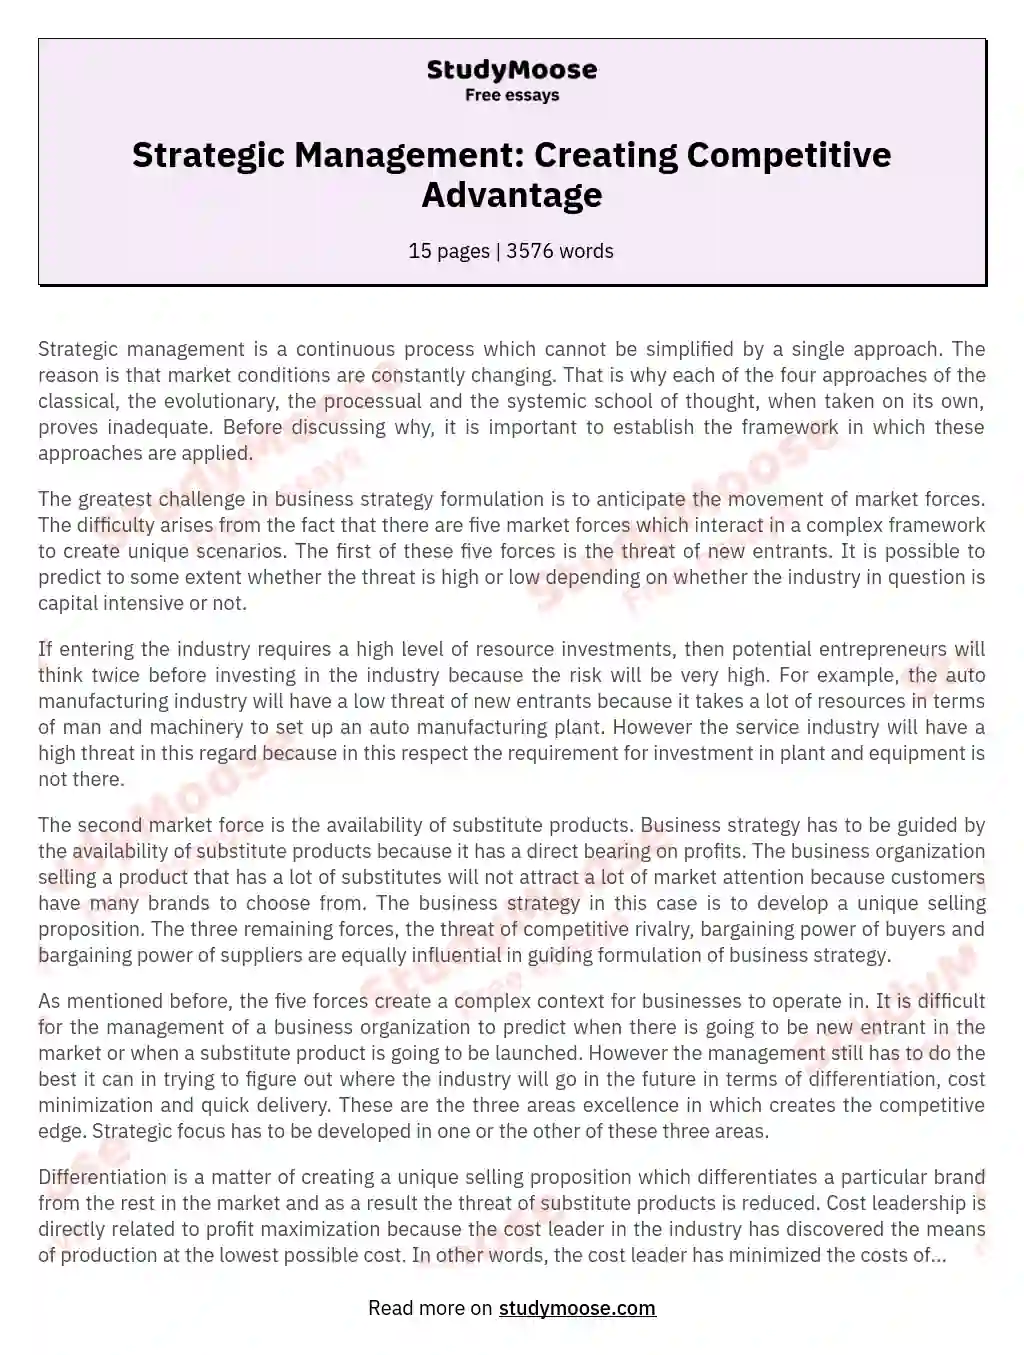 competitive advantage in school essay